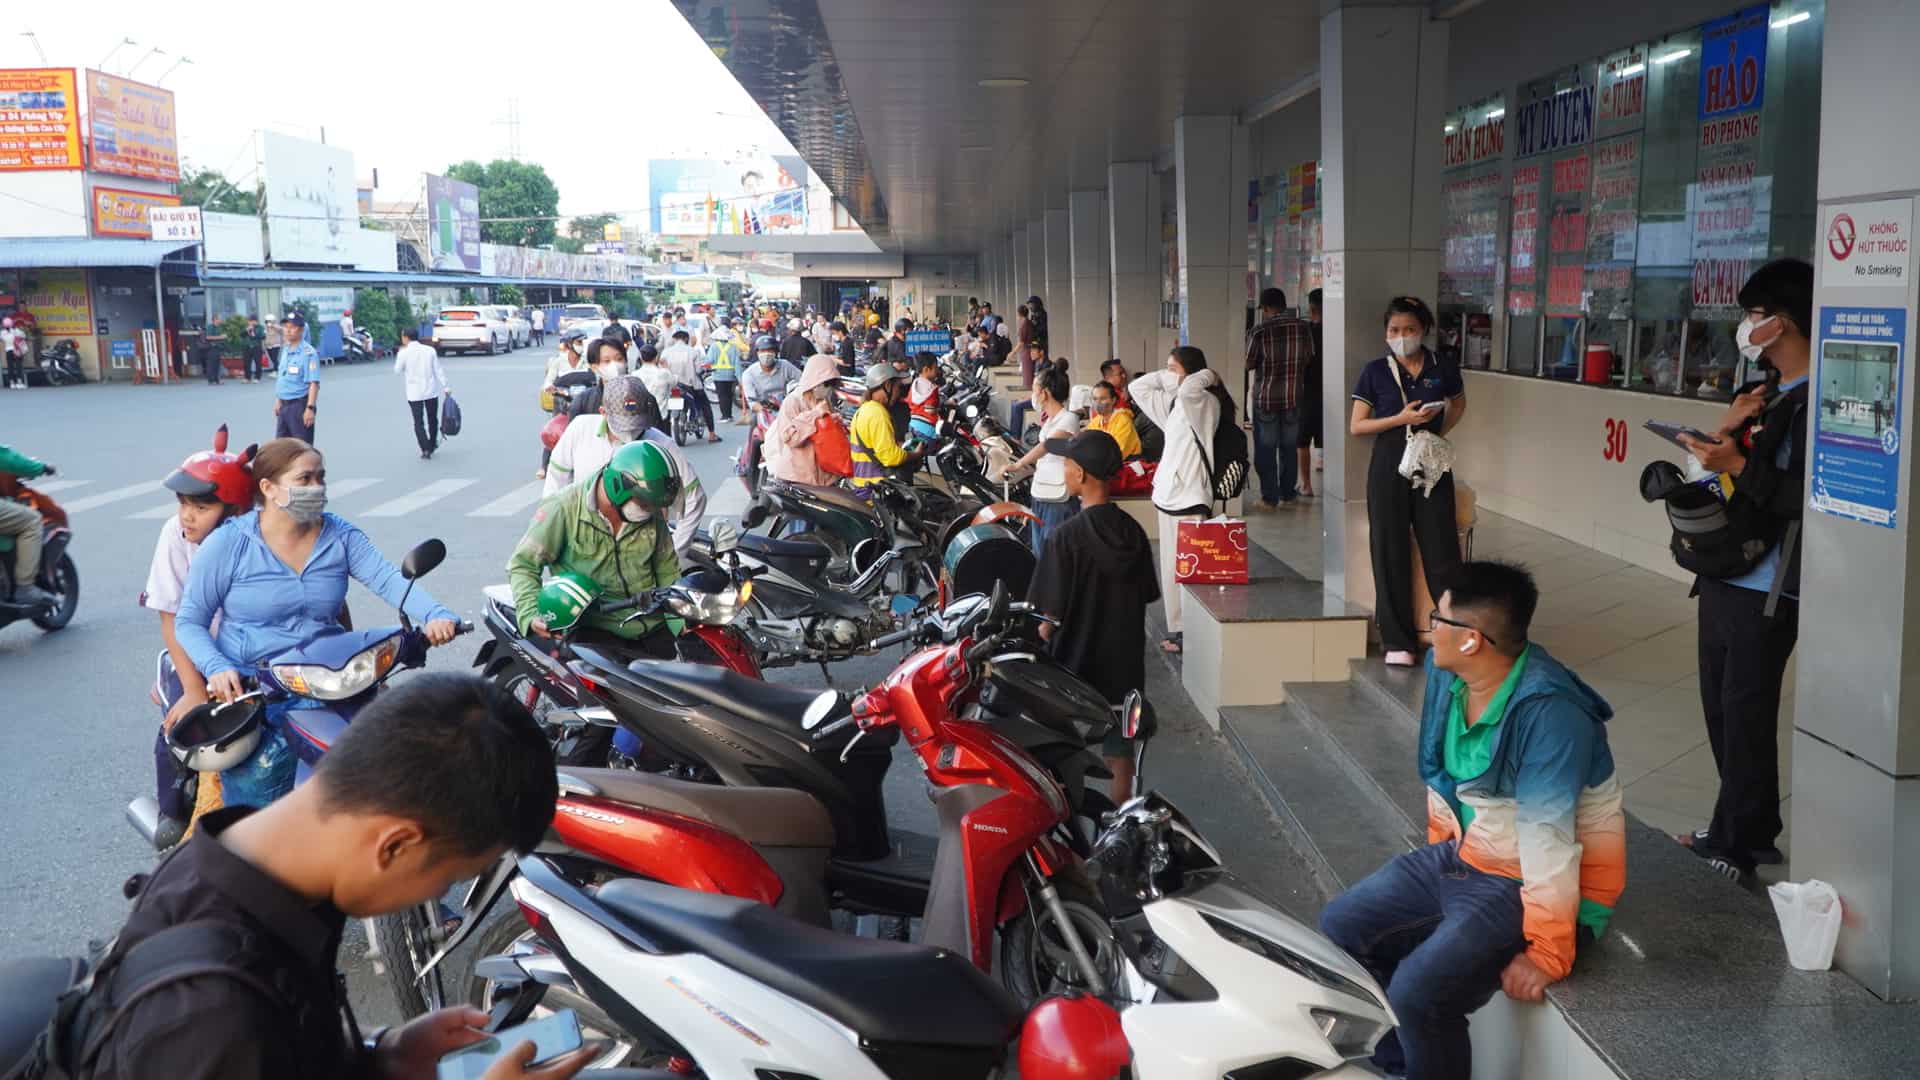 Ghi nhận của Lao Động, tại bến xe Miền Tây (Quận Bình Tân) từ khoảng 17h đã có khá đông người dân đến đây để mua vé, bắt xe rời thành phố. 